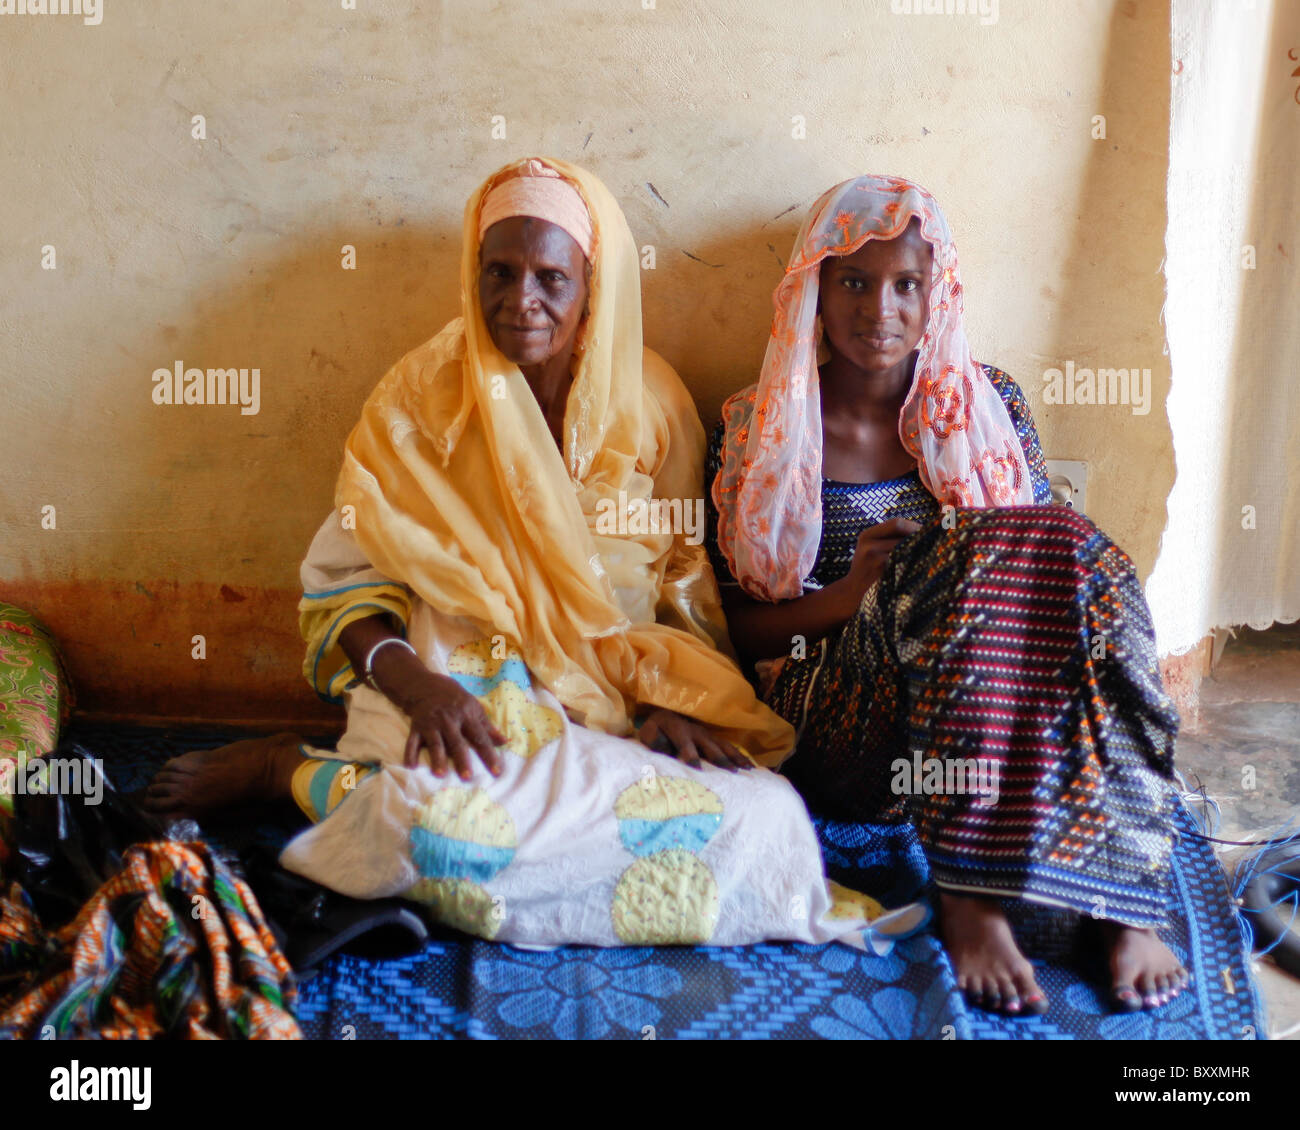 Un vieux et jeune femme s'asseoir ensemble sur un tapis dans une maison à Ouagadougou, Burkina Faso. Banque D'Images